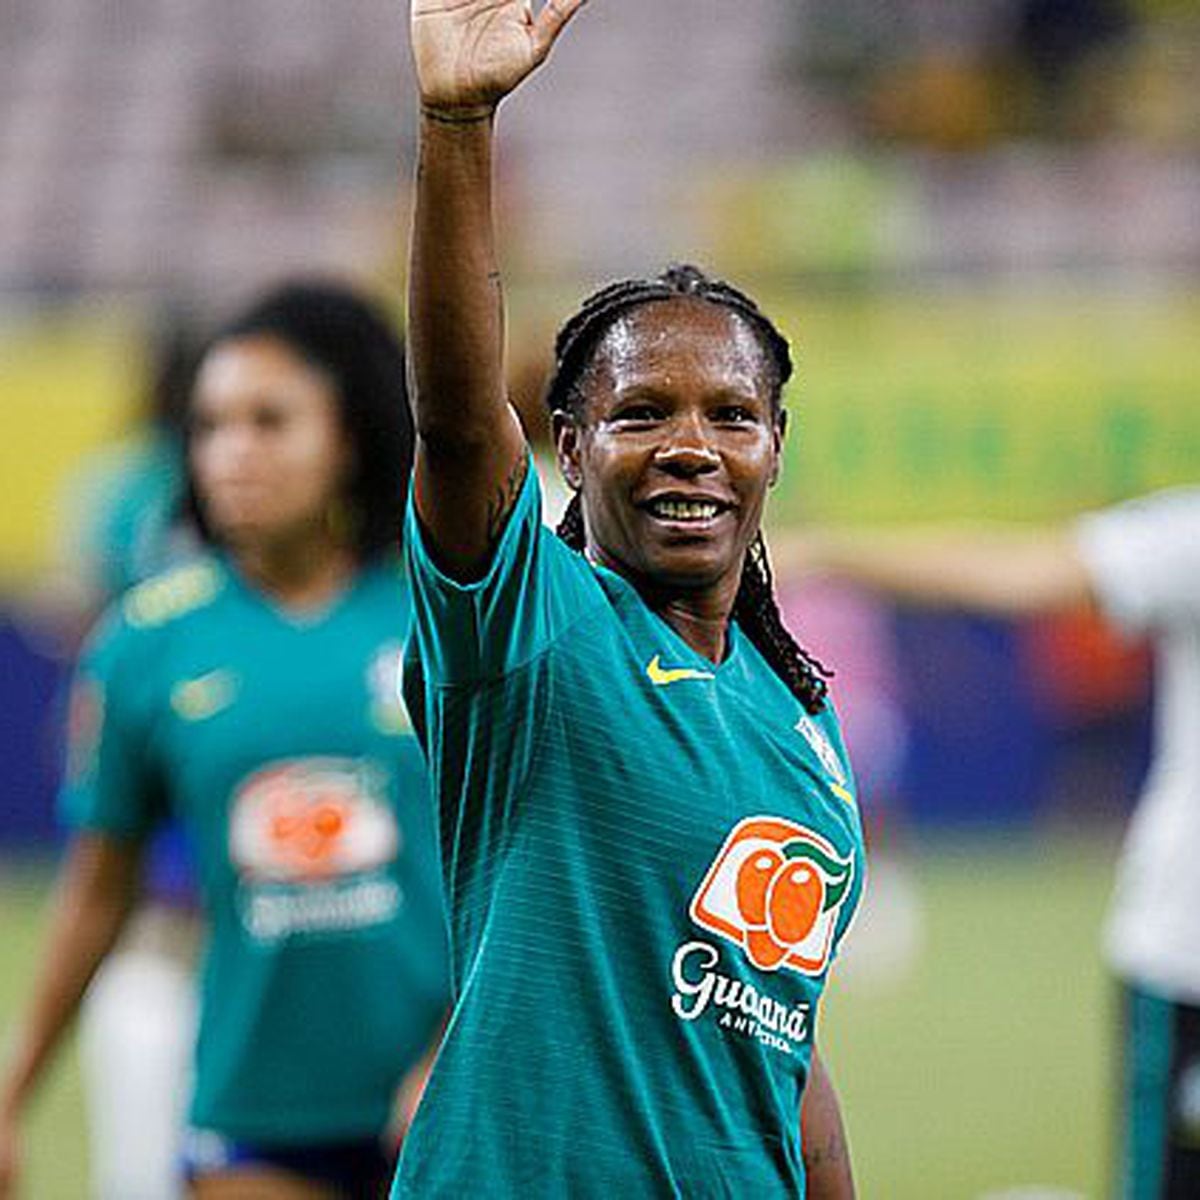 Seleção Feminina goleia Índia no jogo de despedida de Formiga com a camisa  8 canarinha - Lance!